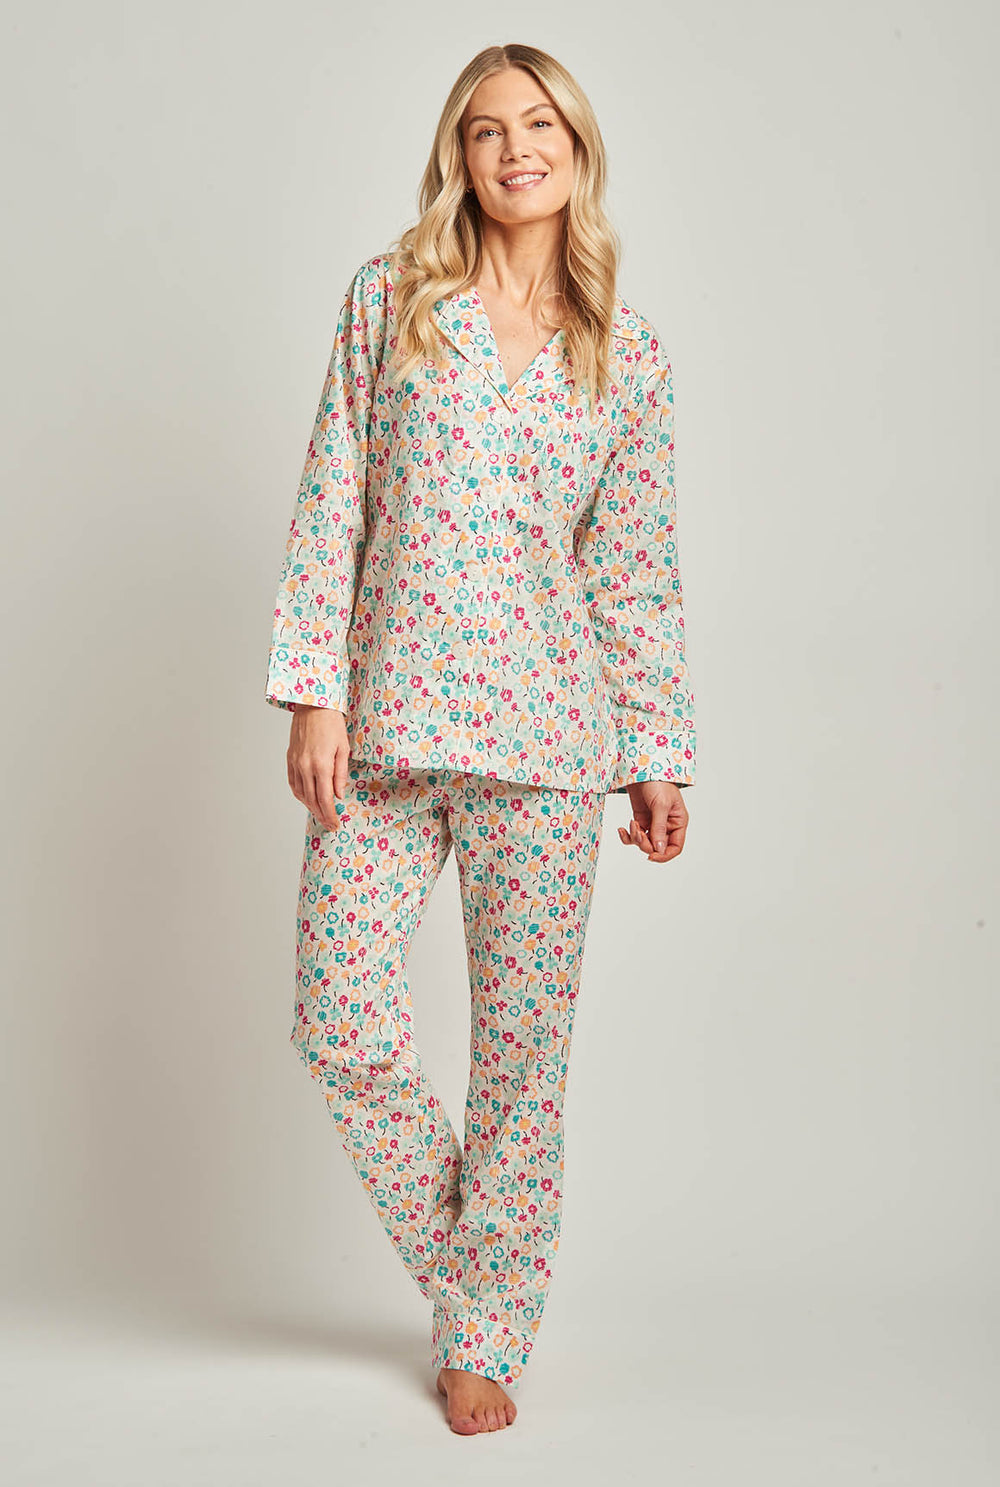 Cotton Voile Pajamas - Elizabeth Cotton